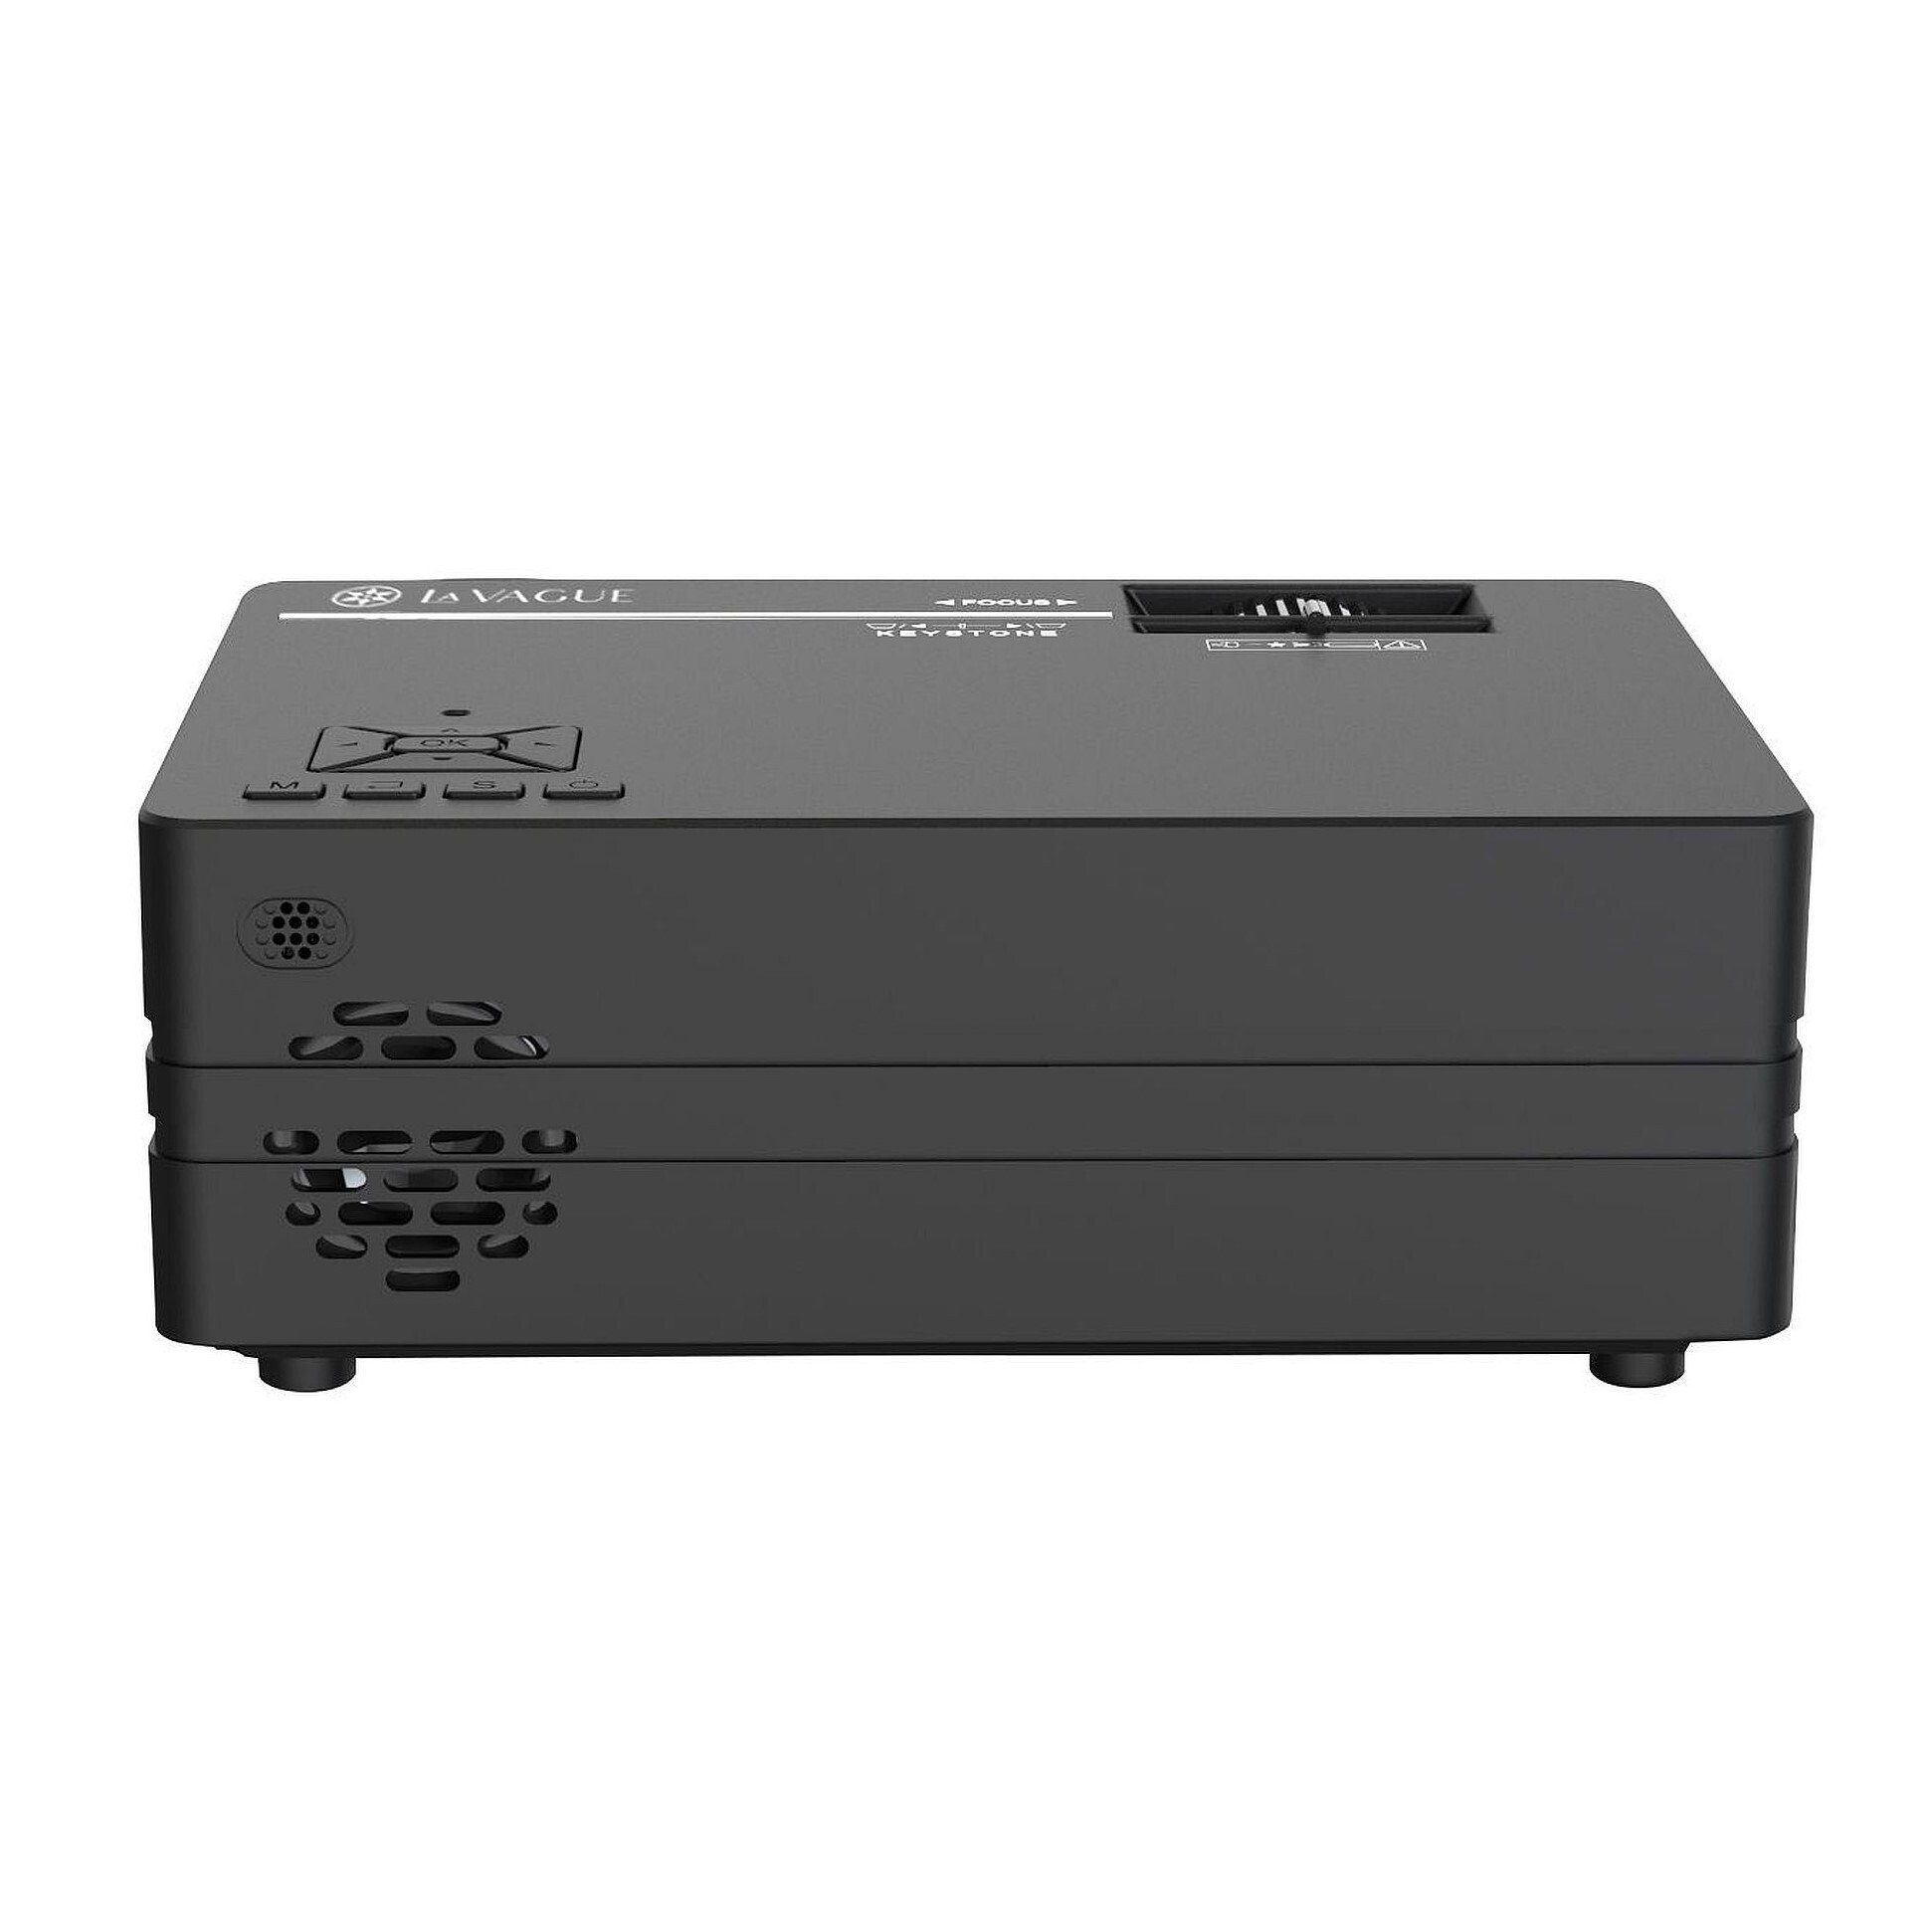 schwarz px, LA WI-FI (2000 1080 led-projektor lm, LED-Projektor) LED-Beamer VAGUE 1000:1, LV-HD240 1920 x